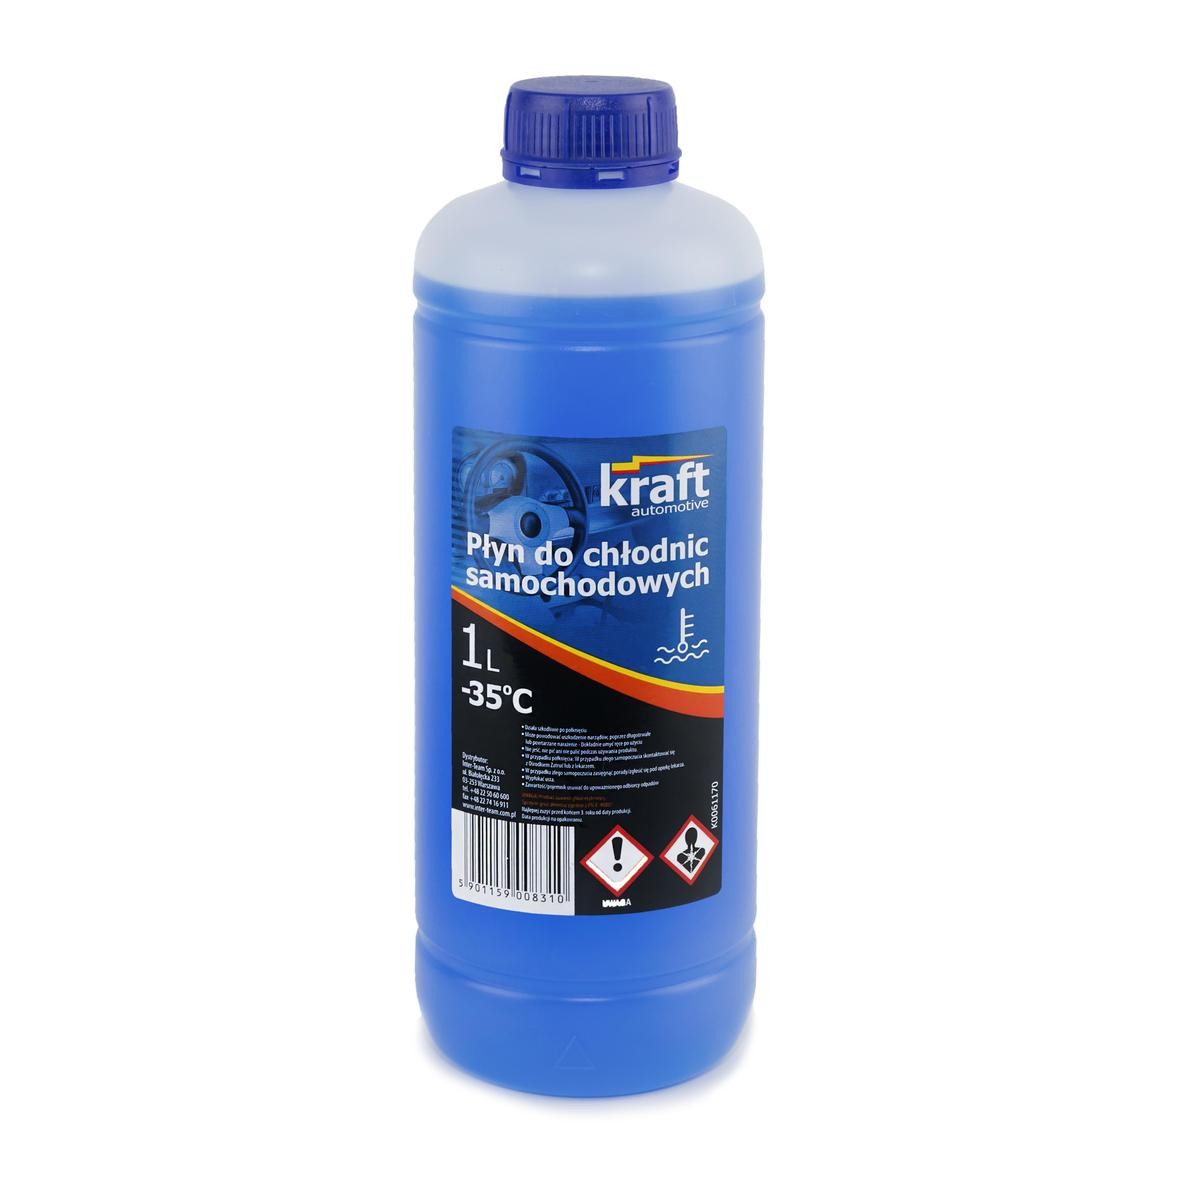 ASIAWING ENDURO Kühlmittel G11, ASTM D3306-03 Blau, 1l KRAFT G11 K0061170